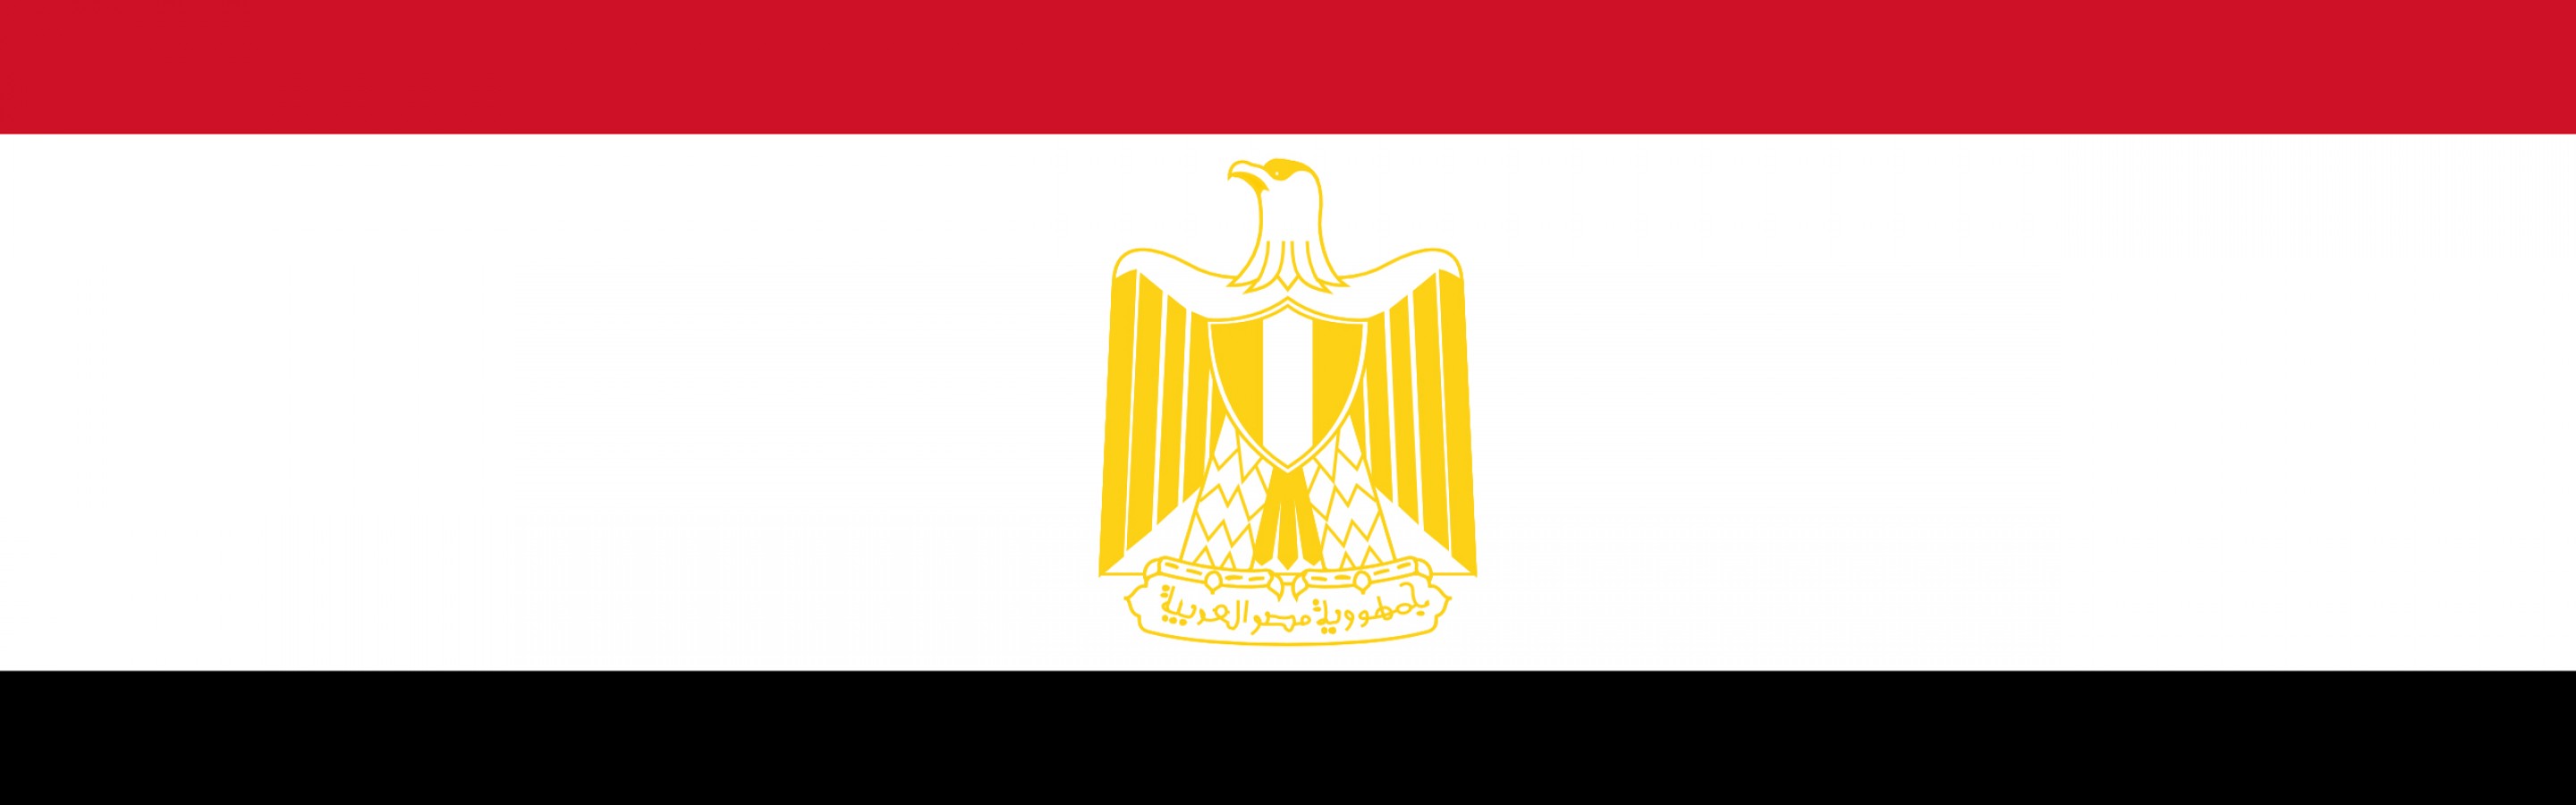 صورة علم مصر  (1)